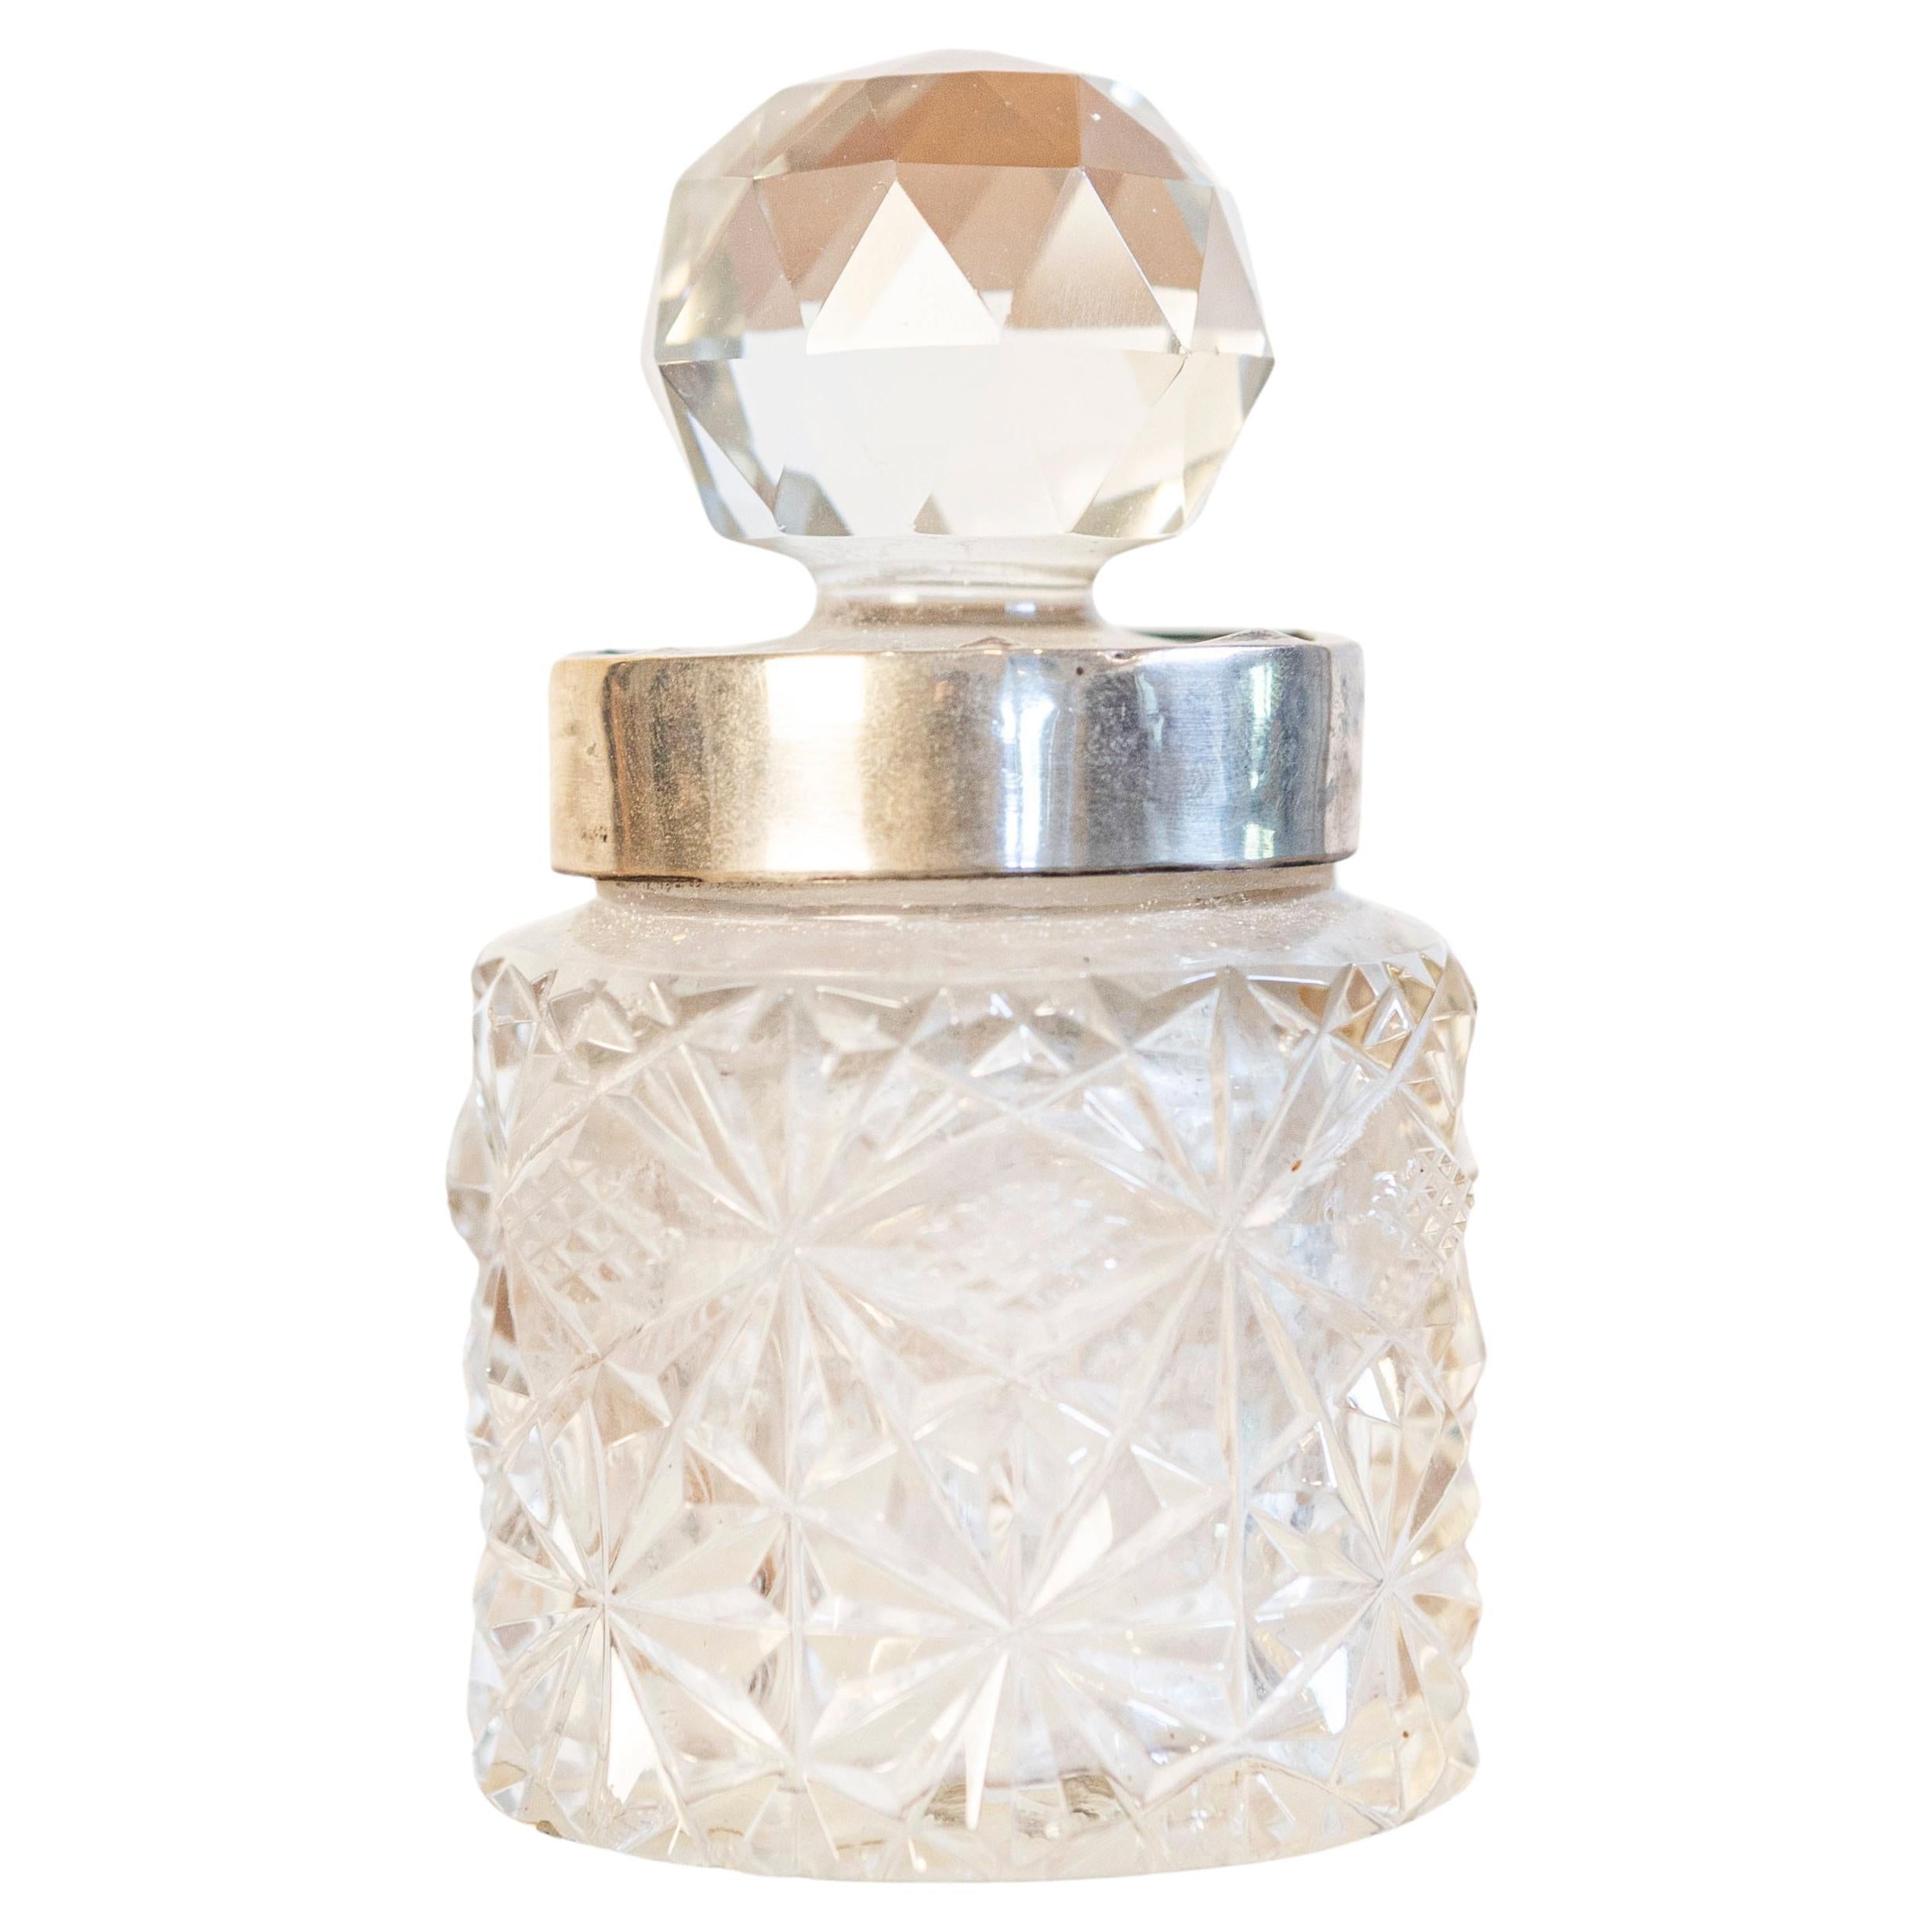 Englischer Krug aus Kristall und Silber des 19. Jahrhunderts mit Diamantmotiven und Kugel Stopper